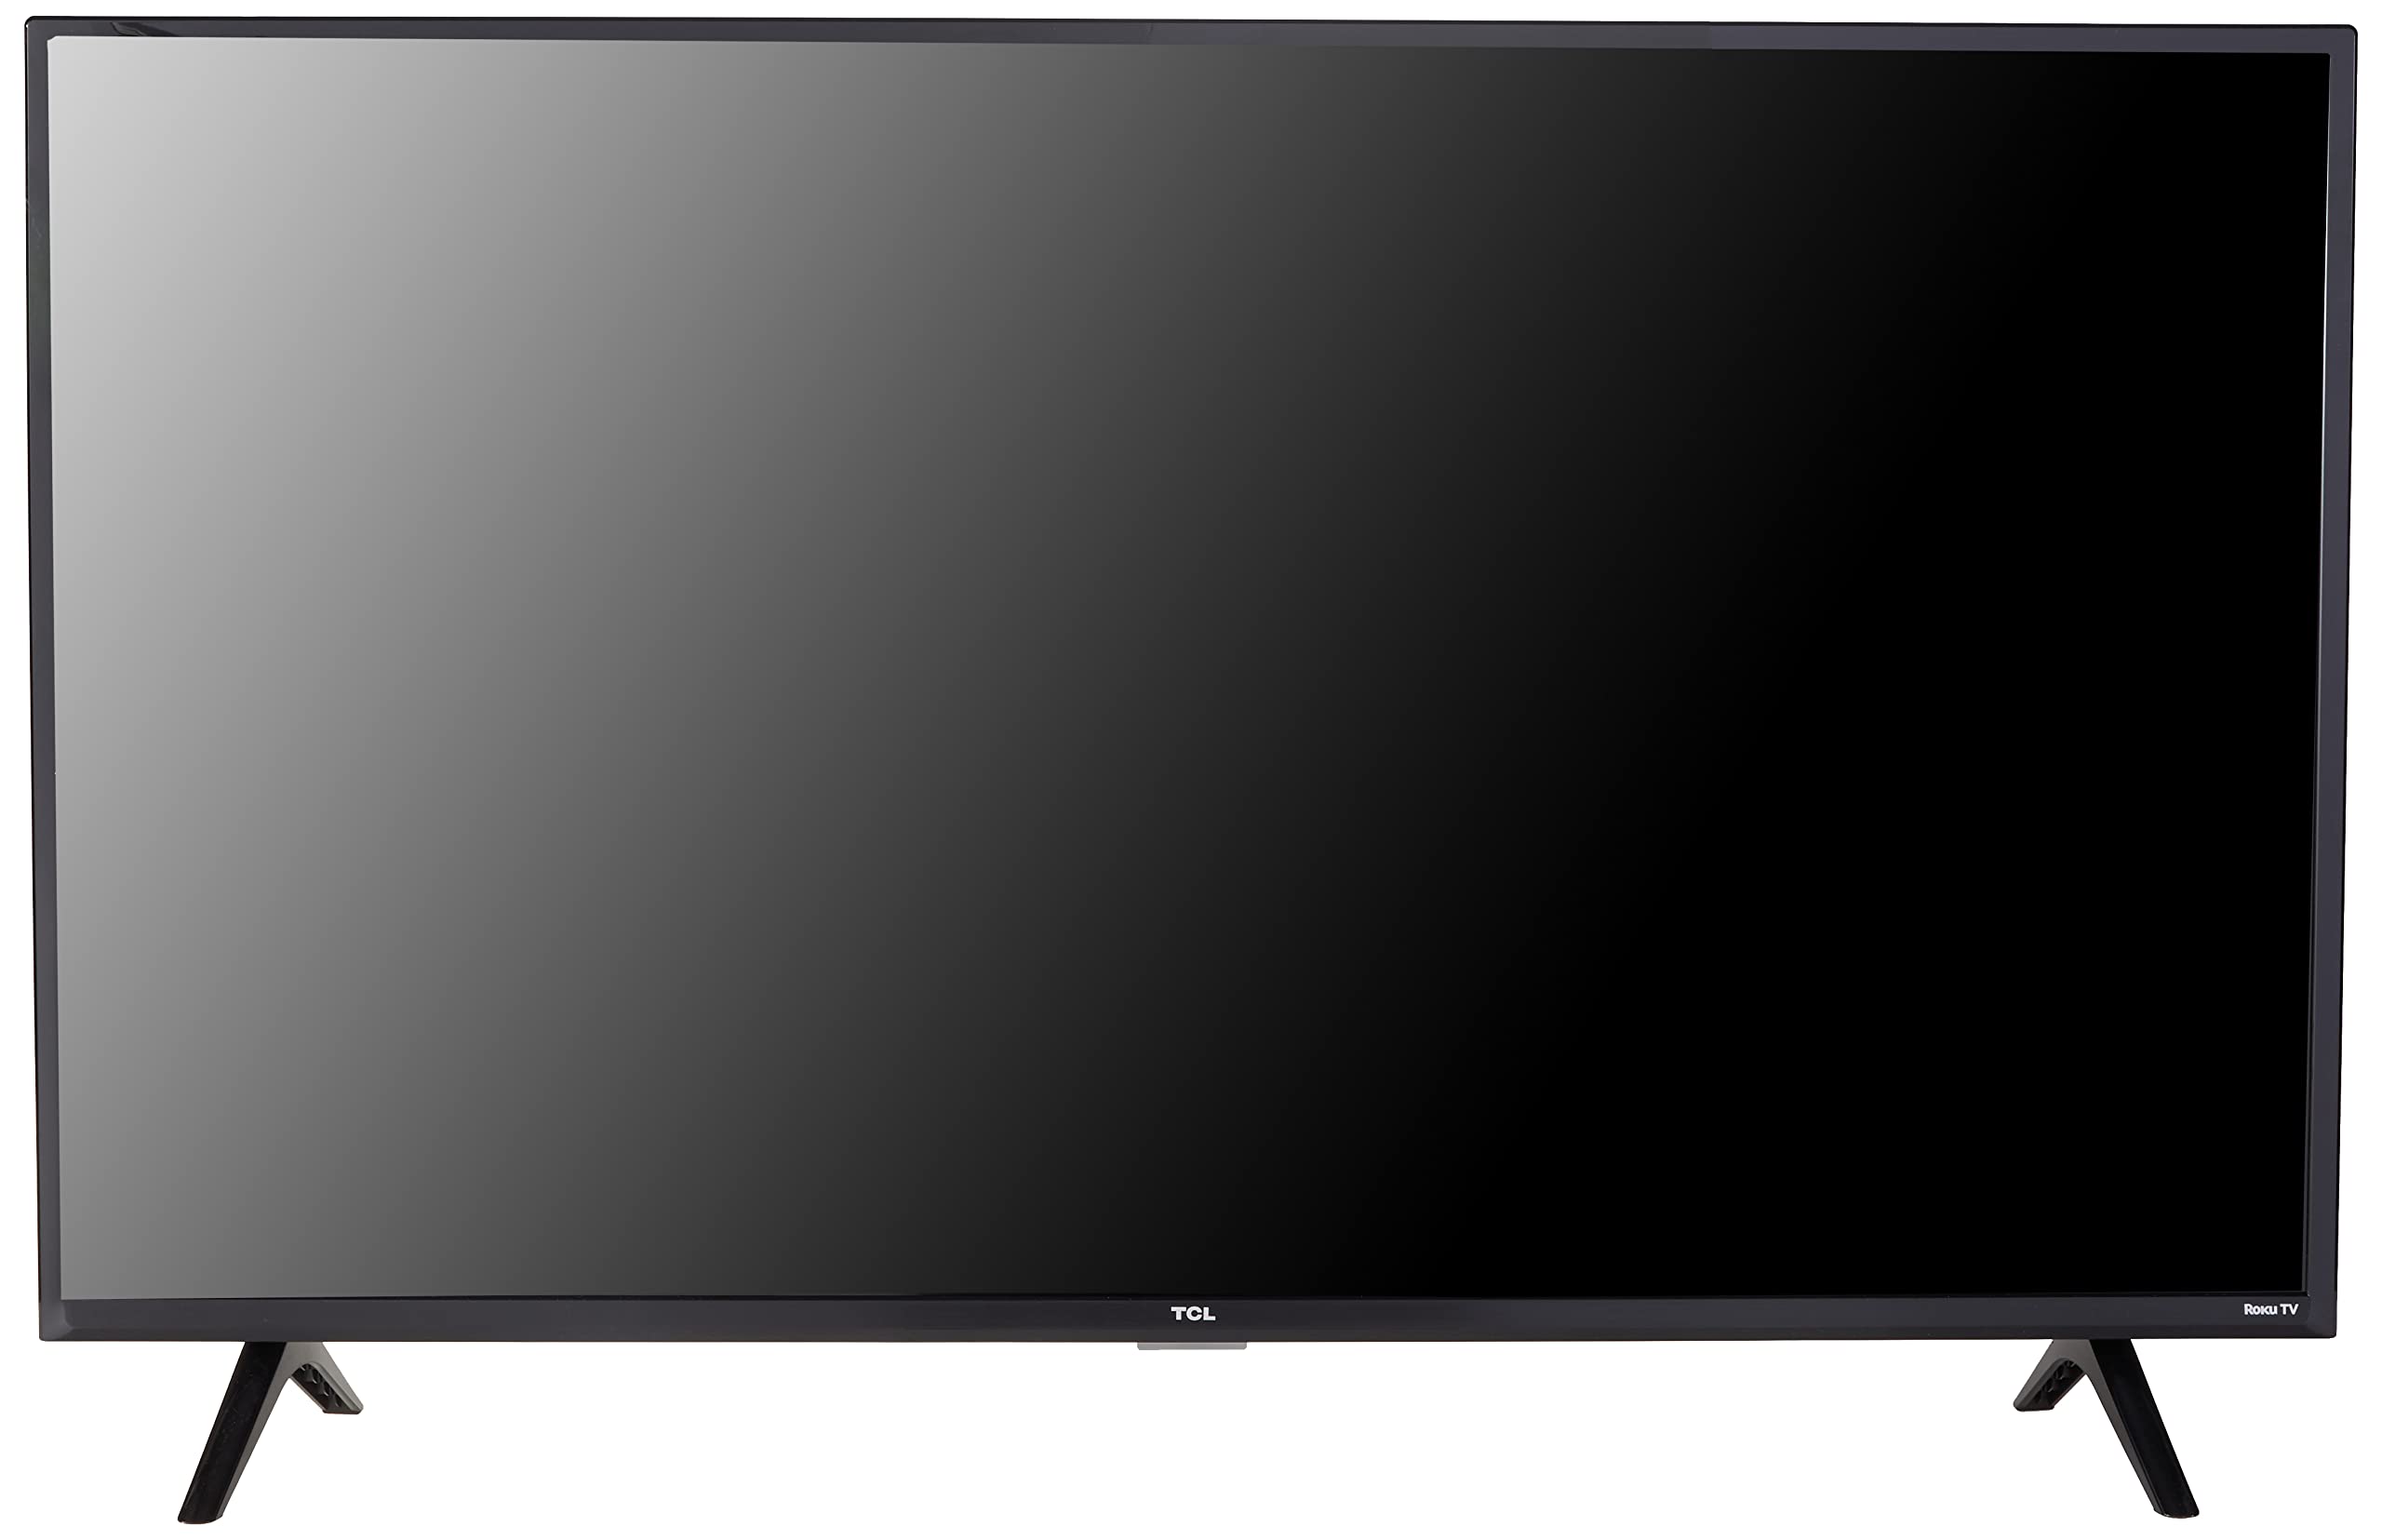 TCL 40' 클래스 3 시리즈 풀 HD 1080p LED 스마트 로쿠 TV - 40S355